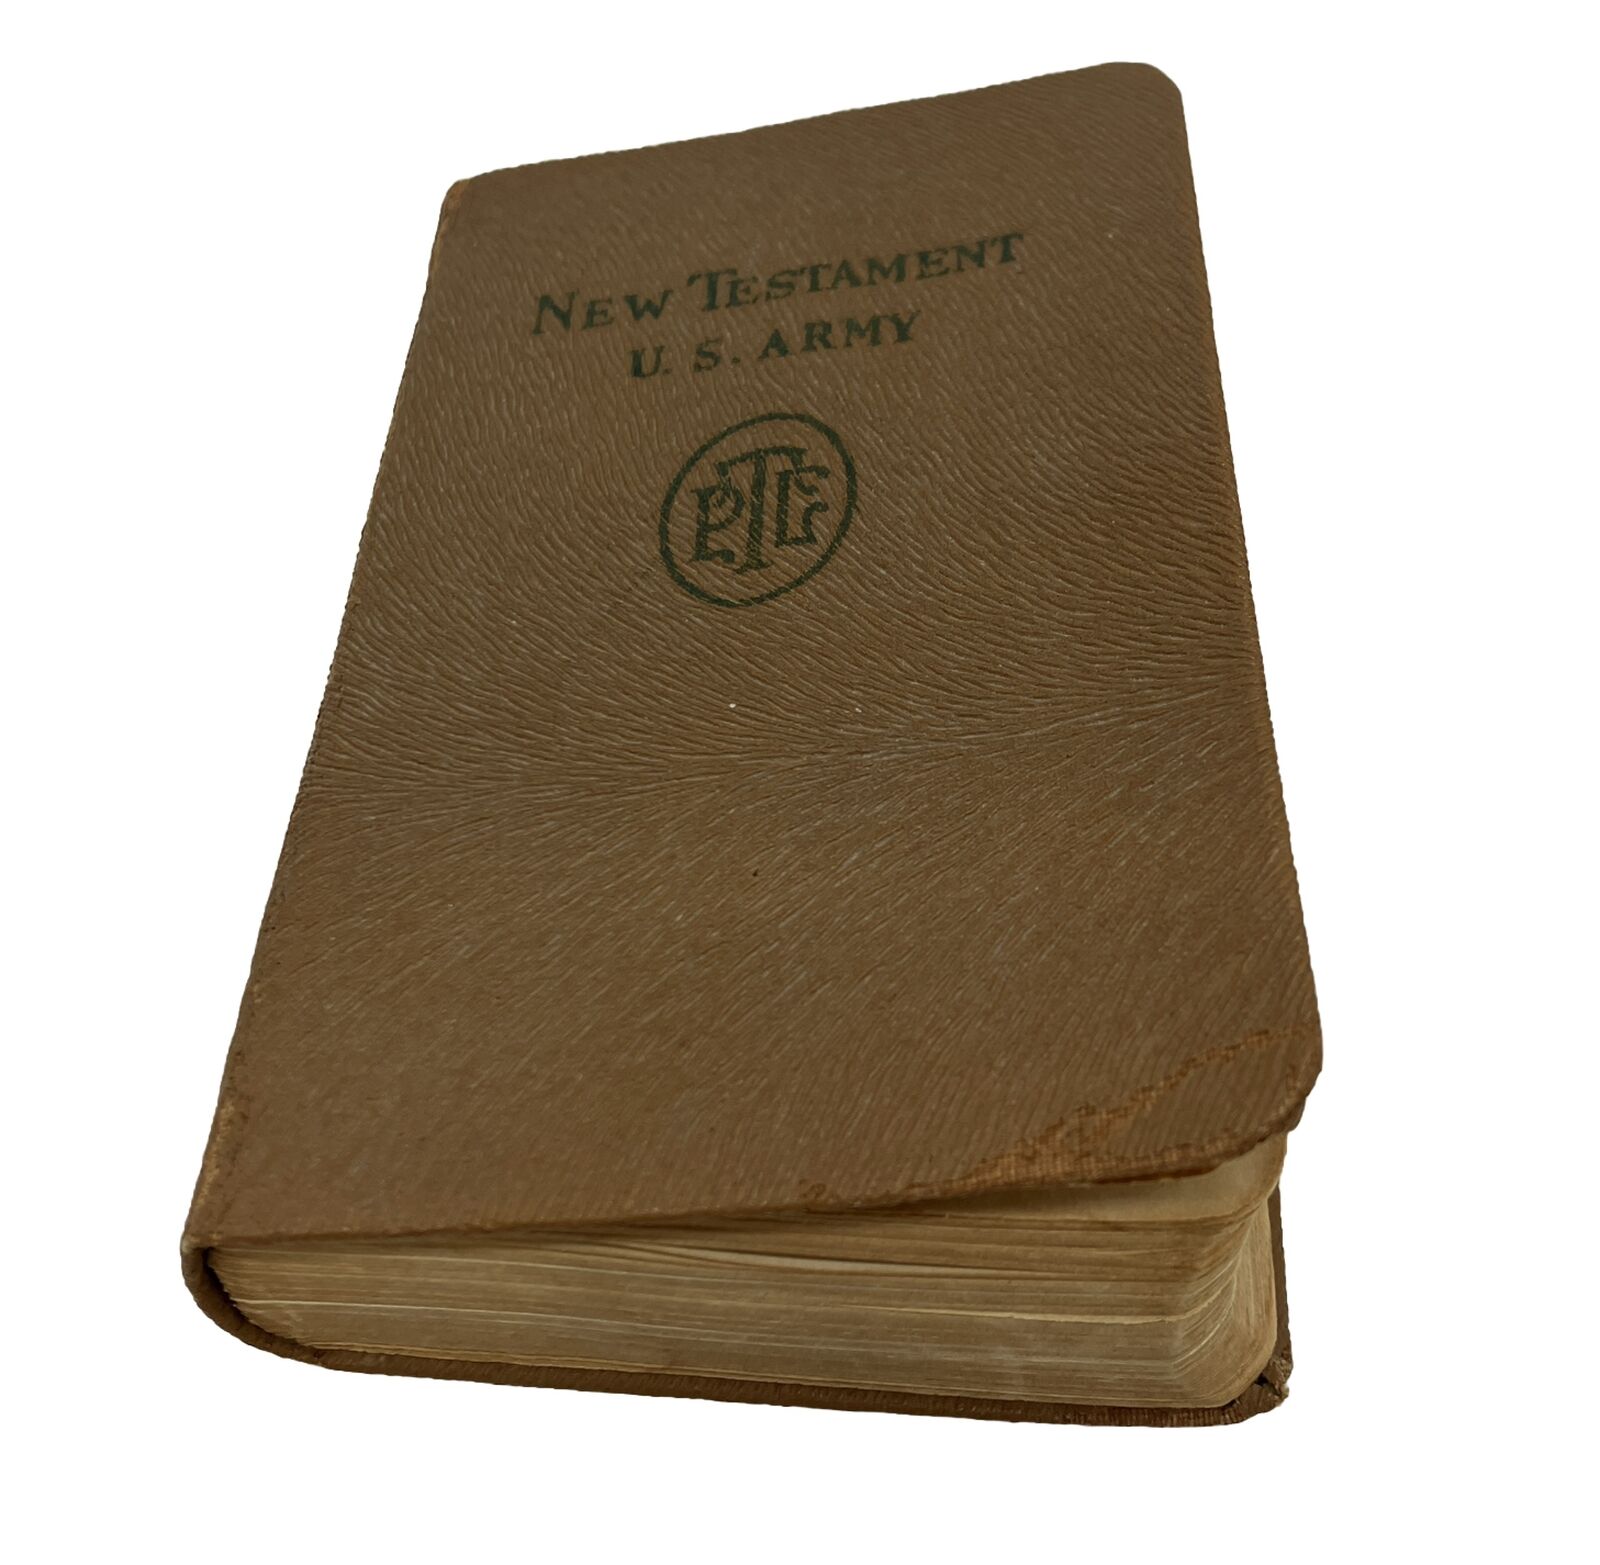 World War 2 1941 New Testament US Army Franklin D Roosevelt Pocket League